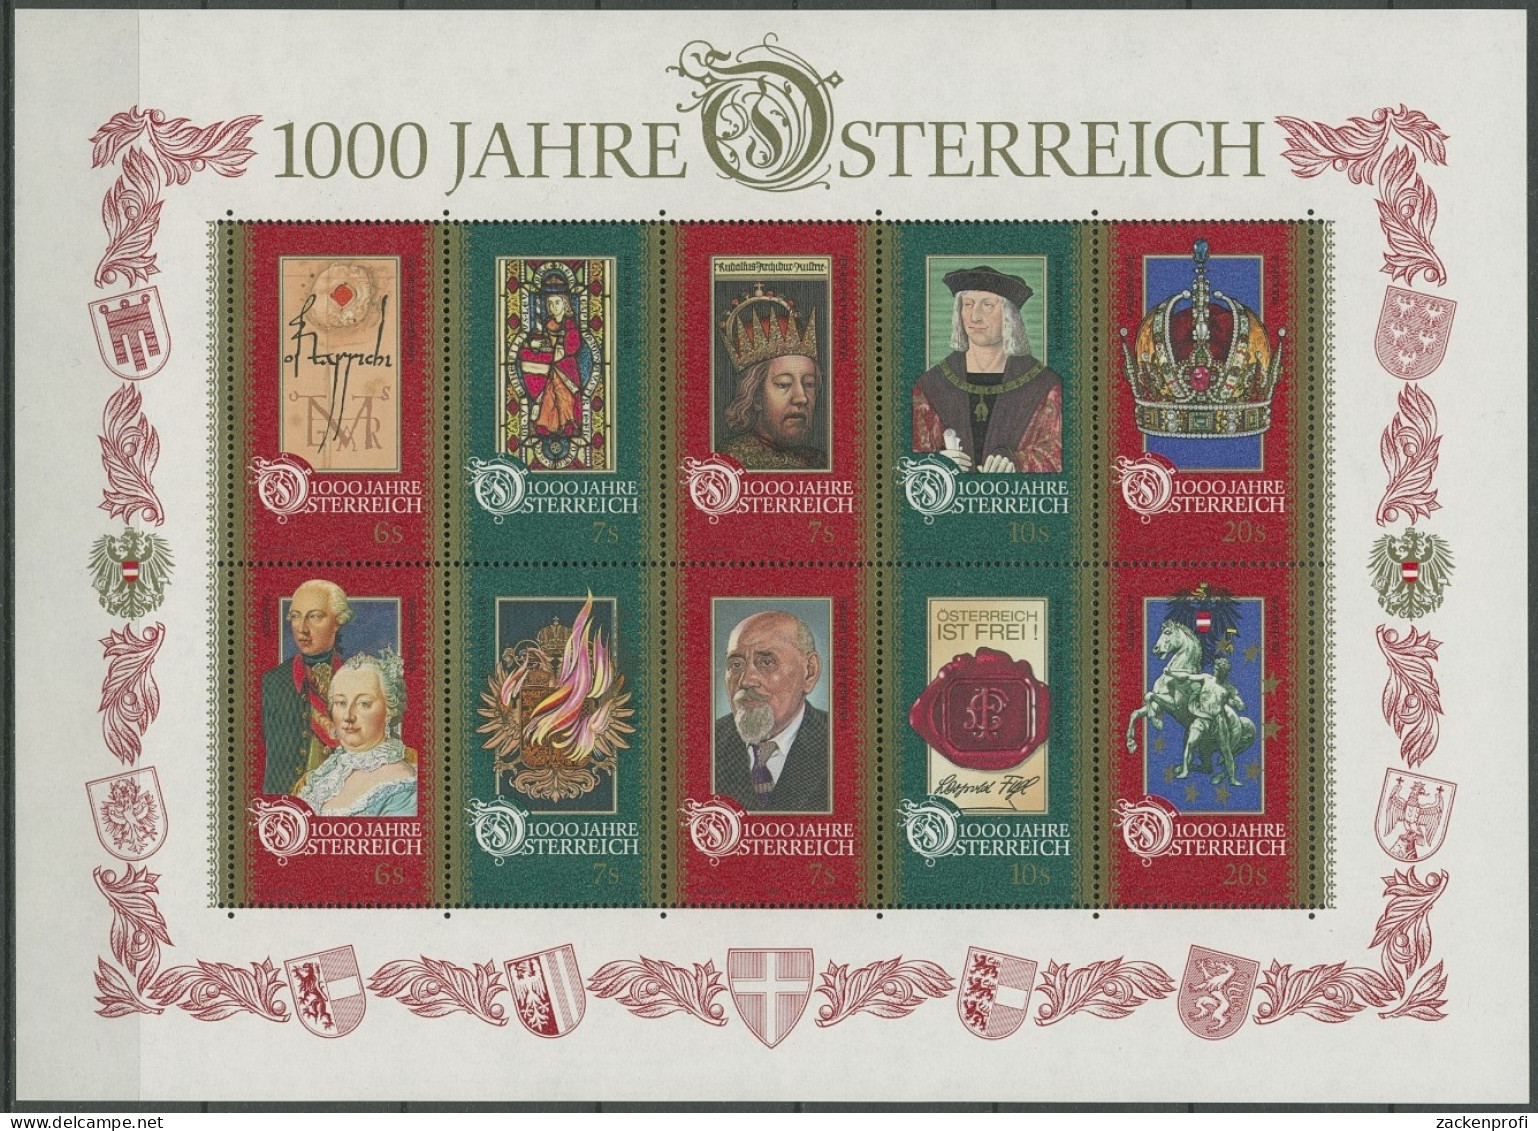 Österreich 1996 1000 Jahre Österreich Block 12 Postfrisch (C16550) - Blocs & Hojas